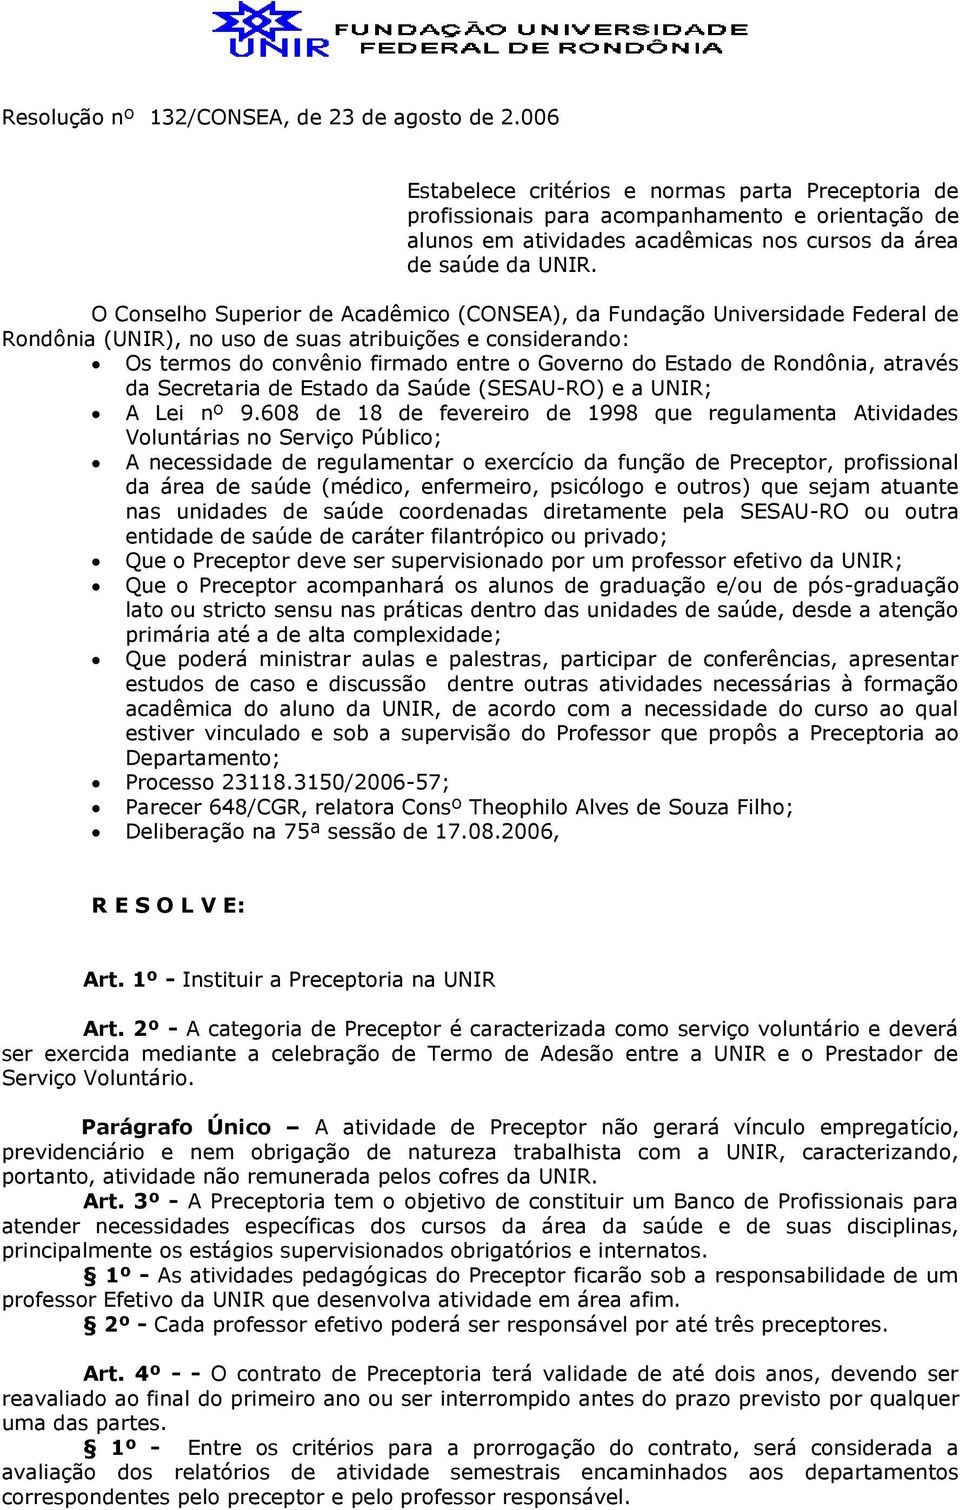 O Conselho Superior de Acadêmico (CONSEA), da Fundação Universidade Federal de Rondônia (UNIR), no uso de suas atribuições e considerando: Os termos do convênio firmado entre o Governo do Estado de